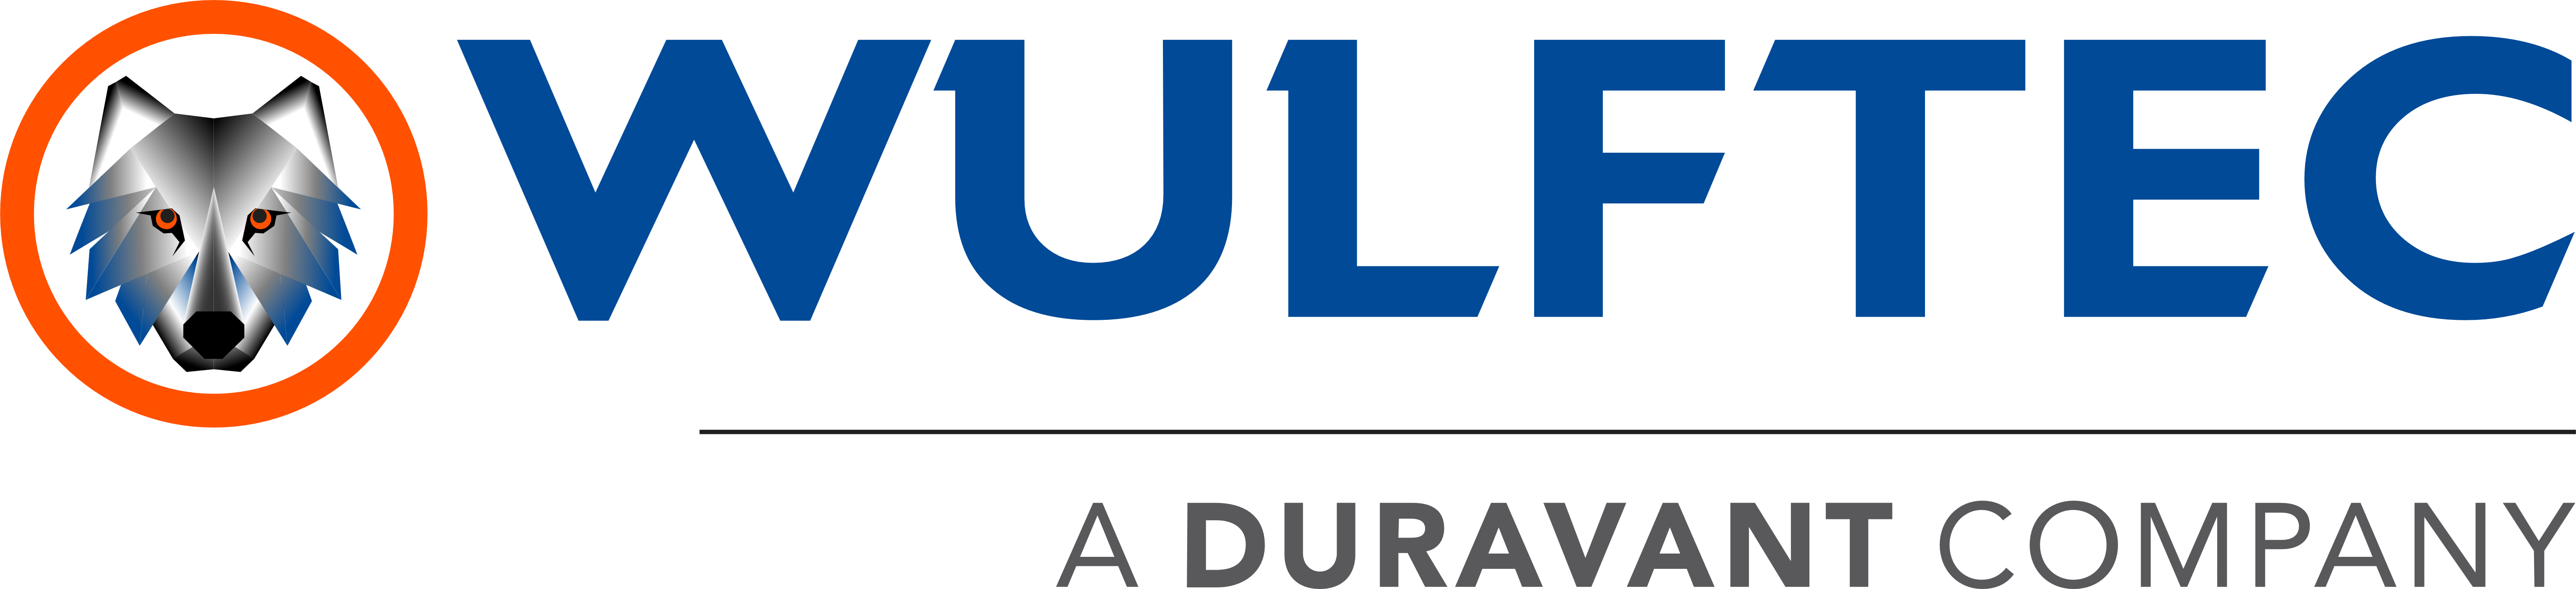 Logotipo da Wulftec